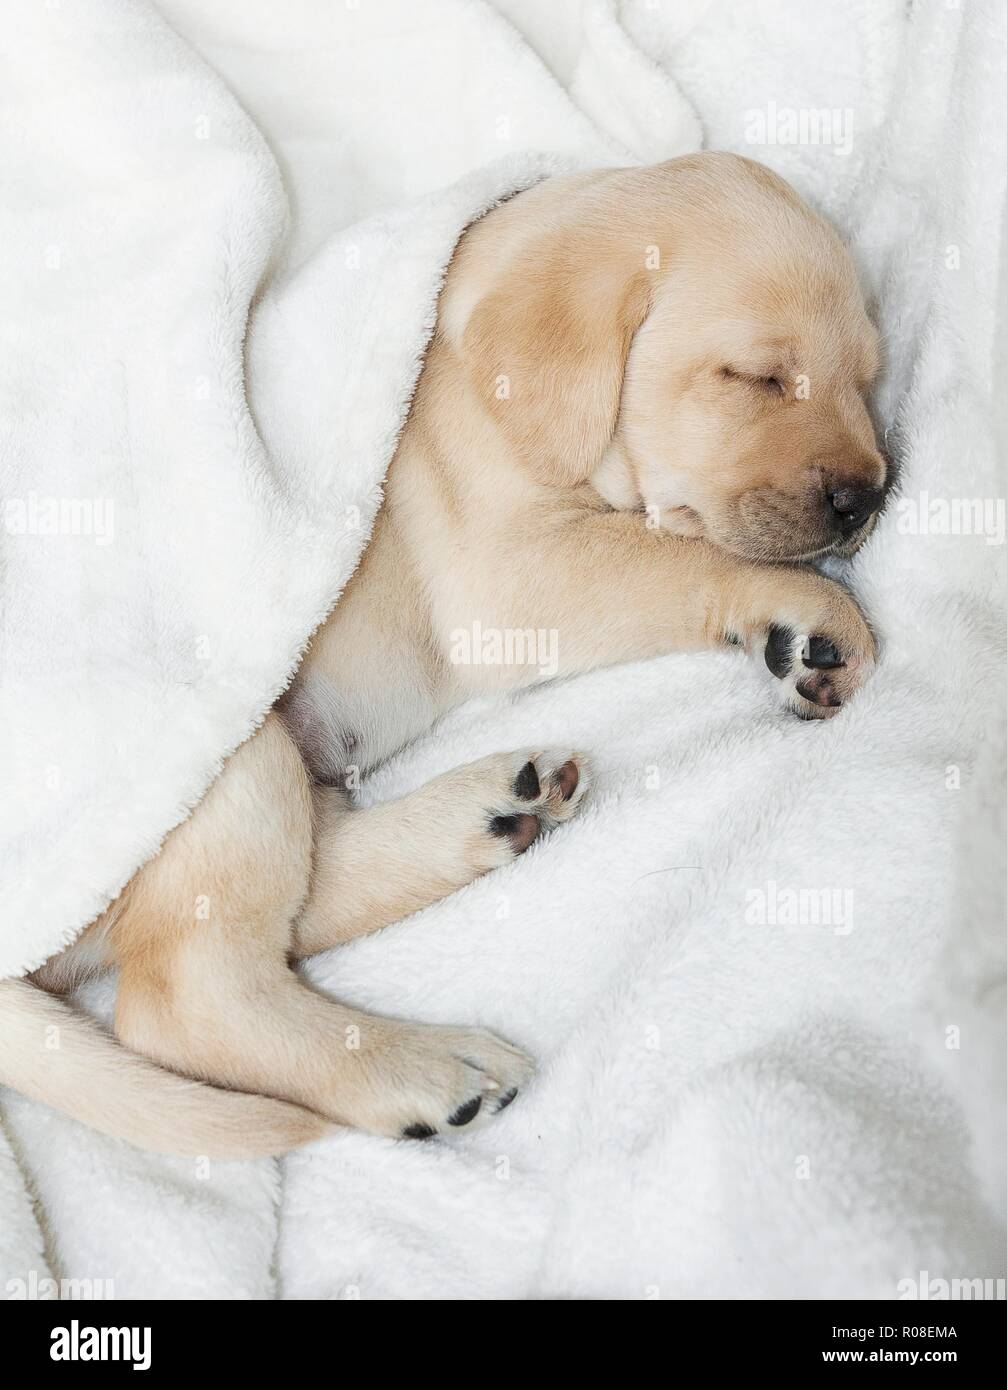 Sleeping Gold labrador puppy Stock Photo